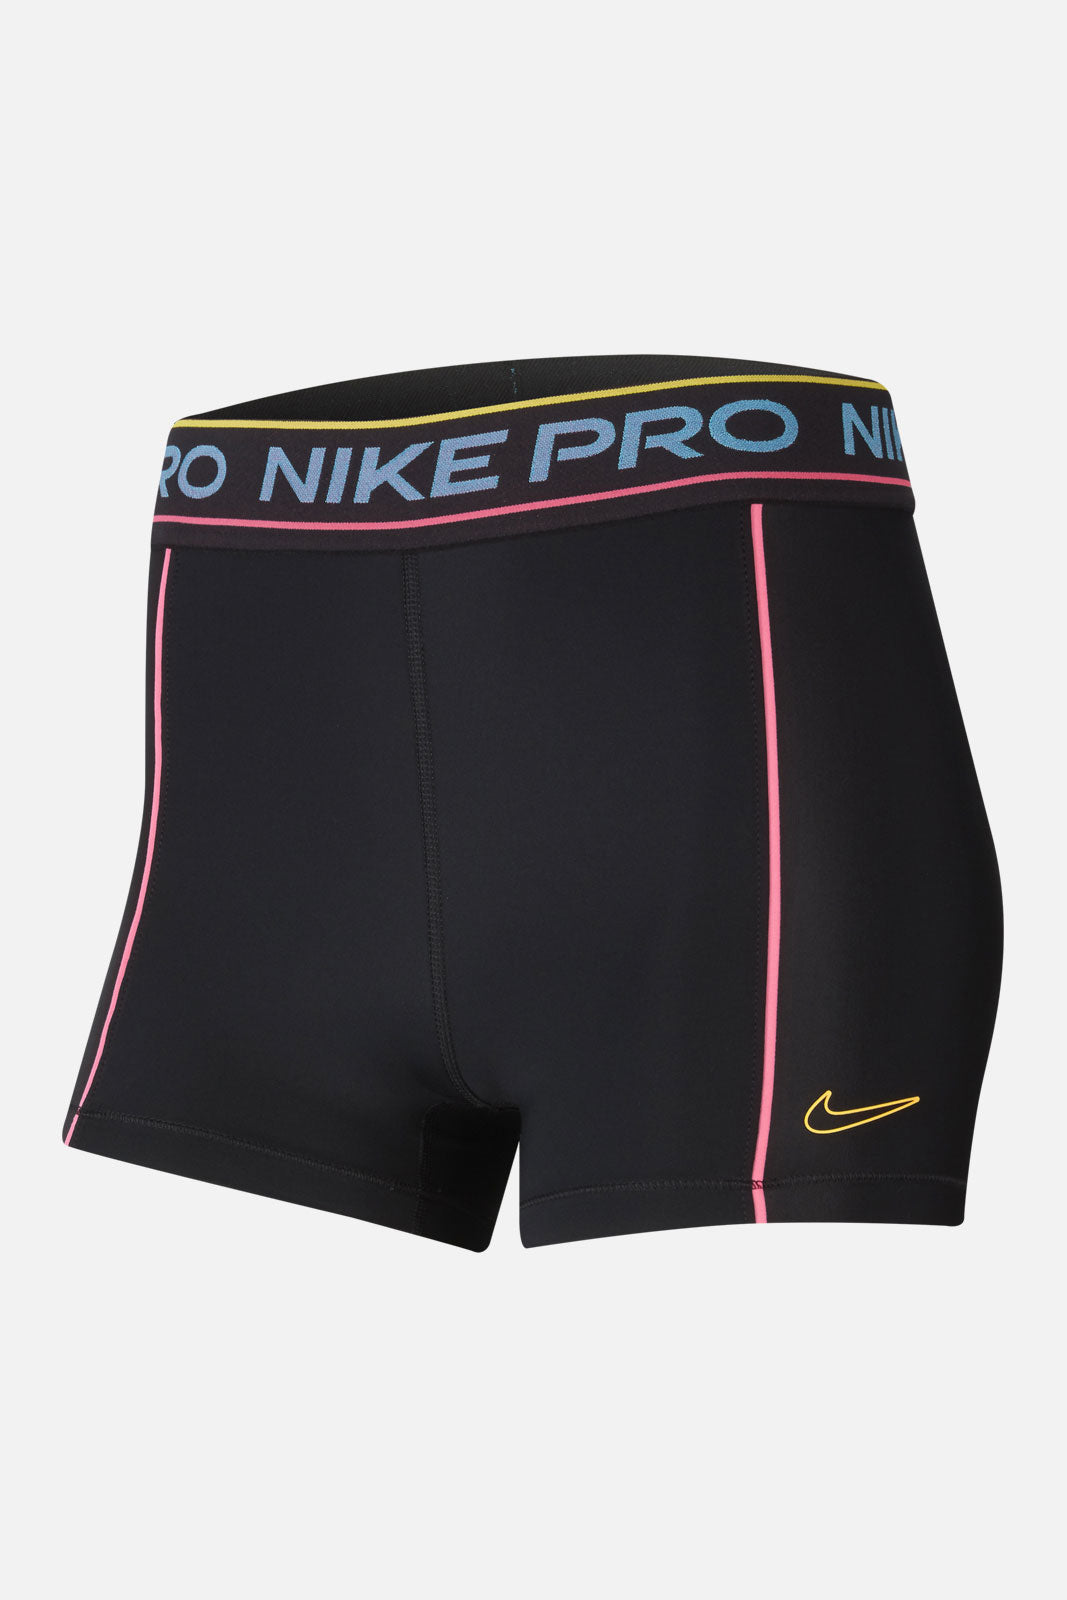 Nike Pro Short 3 In